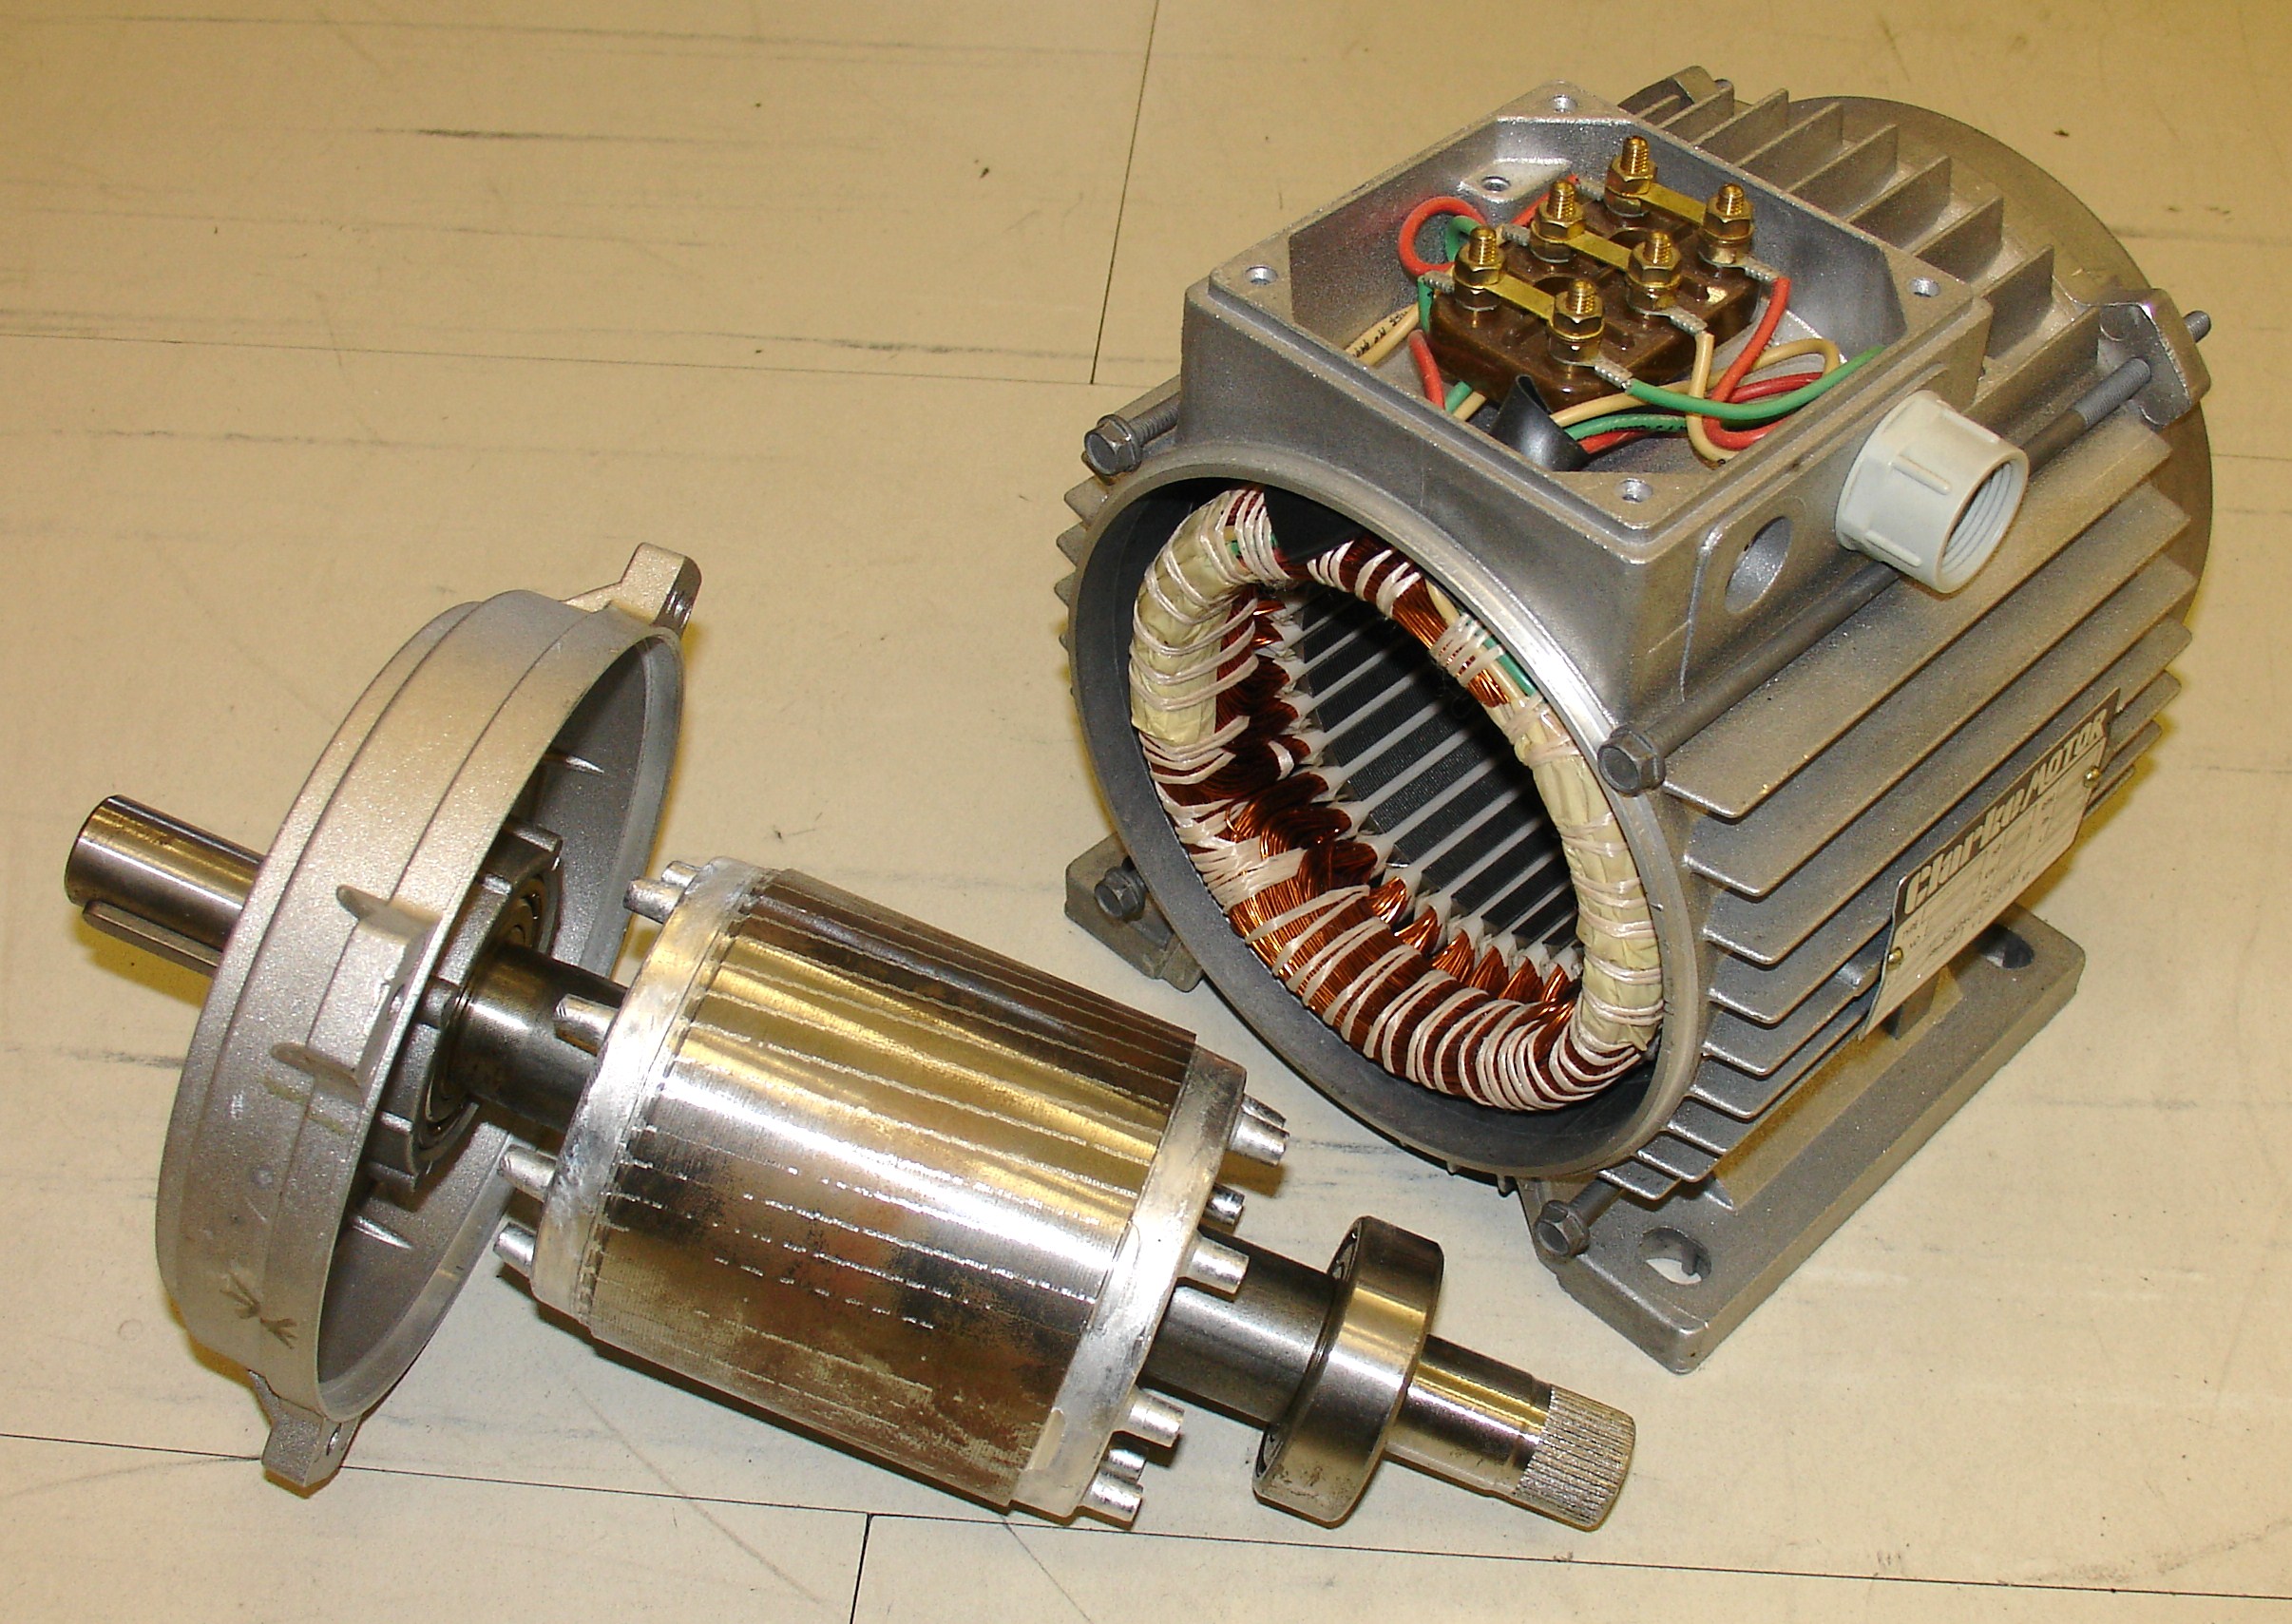 Electric motor - Wikipedia